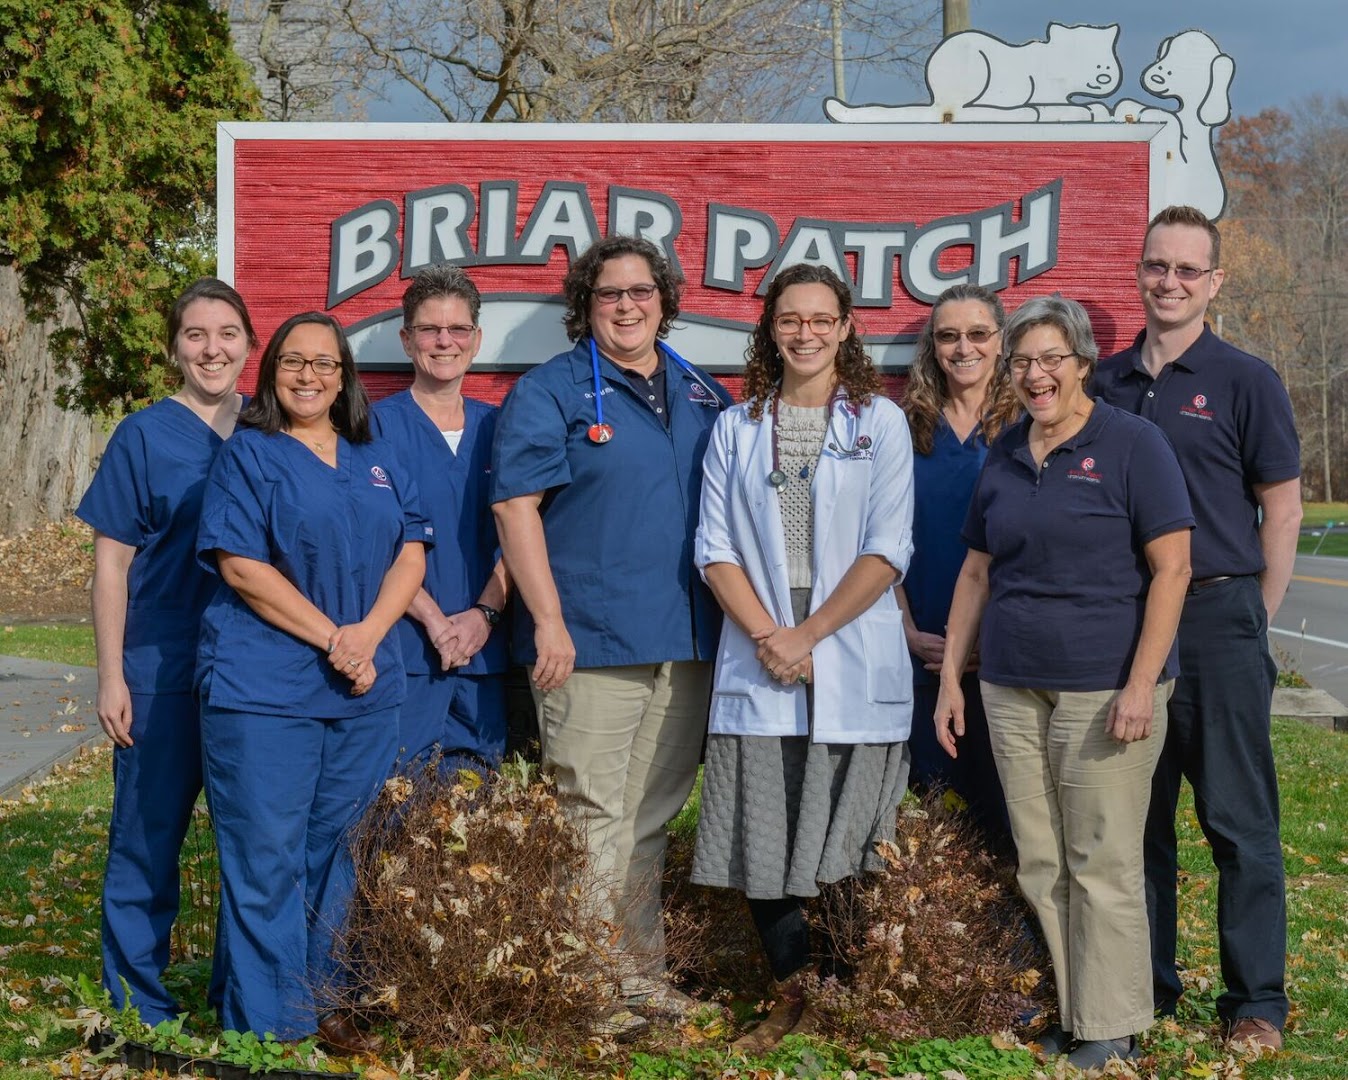 Briar Patch Veterinary Hospital